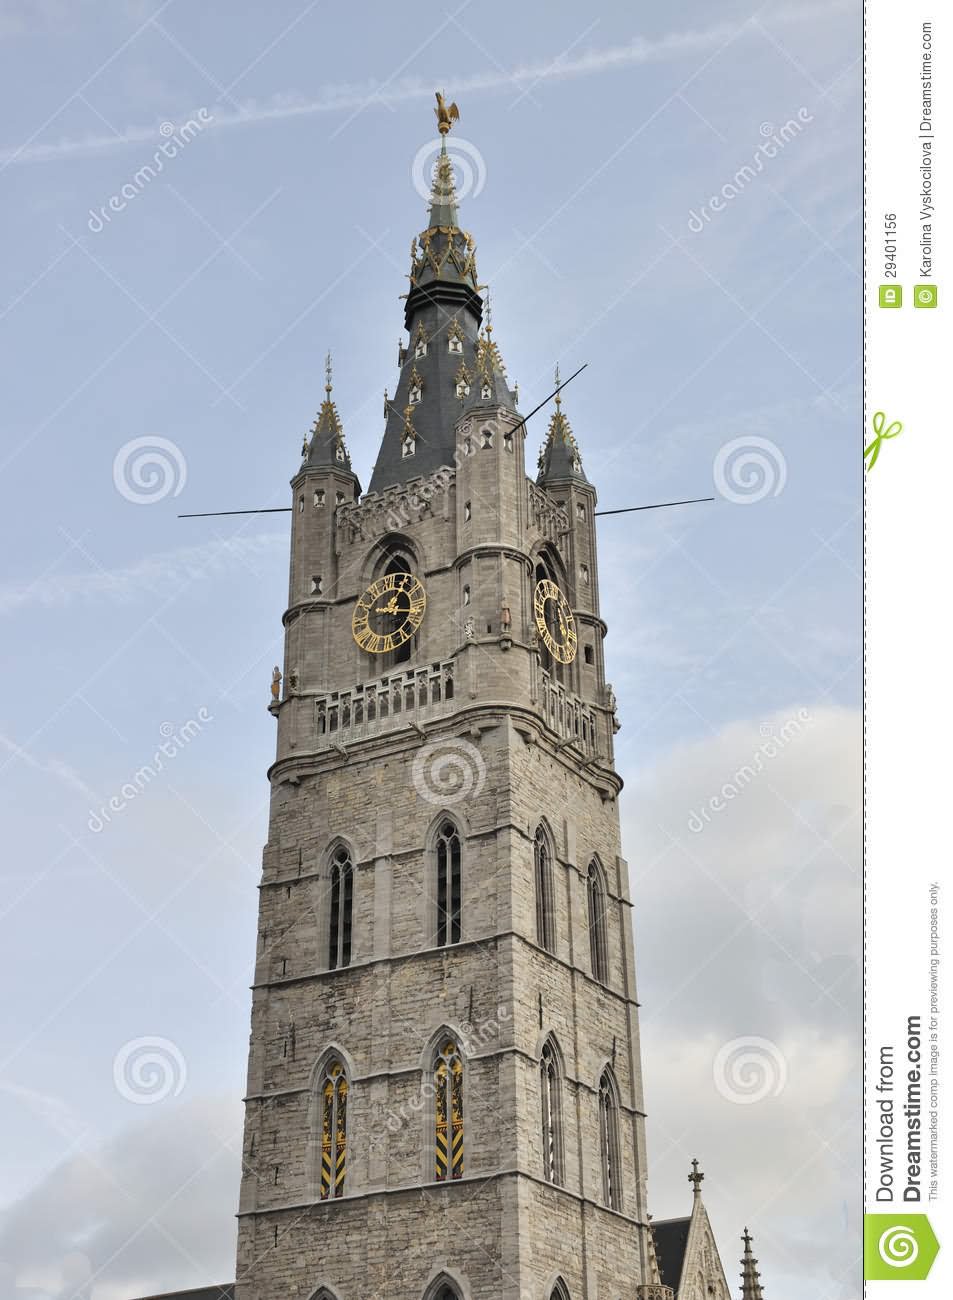 Bell Tower Of The Belfry of Ghent In Belgium